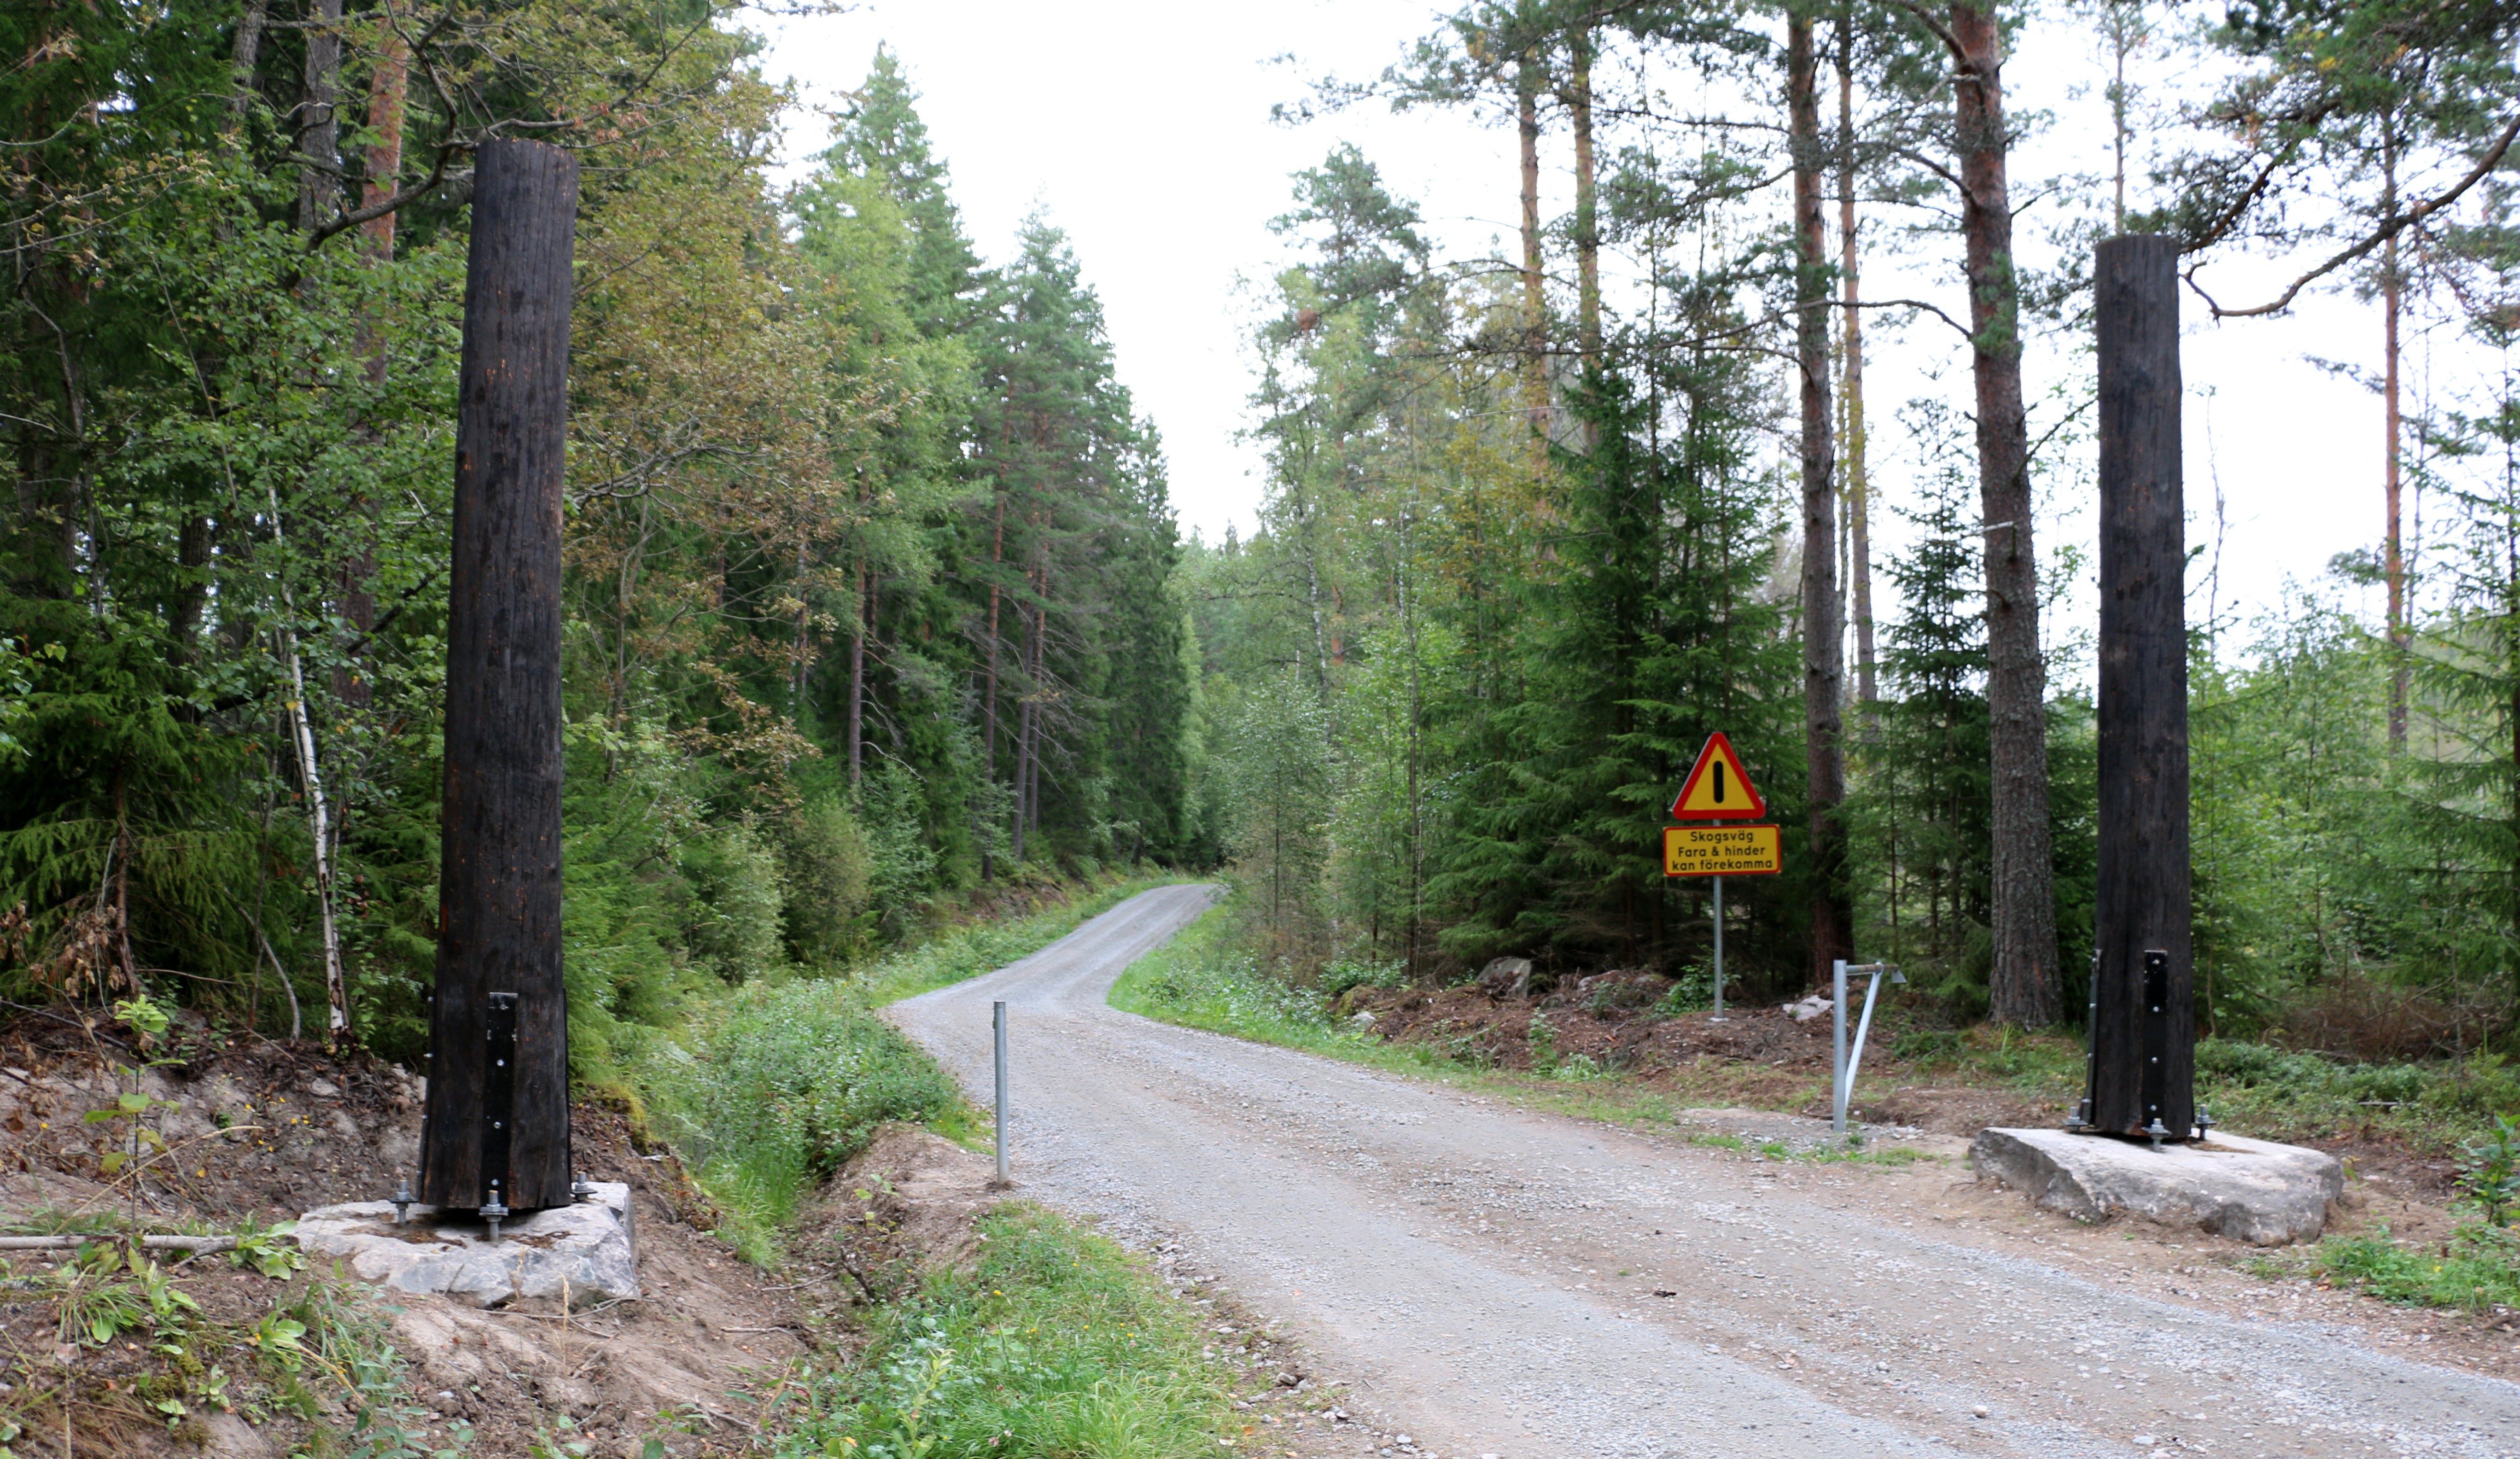 Grusväg som leder in i skogen. Vid infarten finns en vägbom och en varningsskylt.